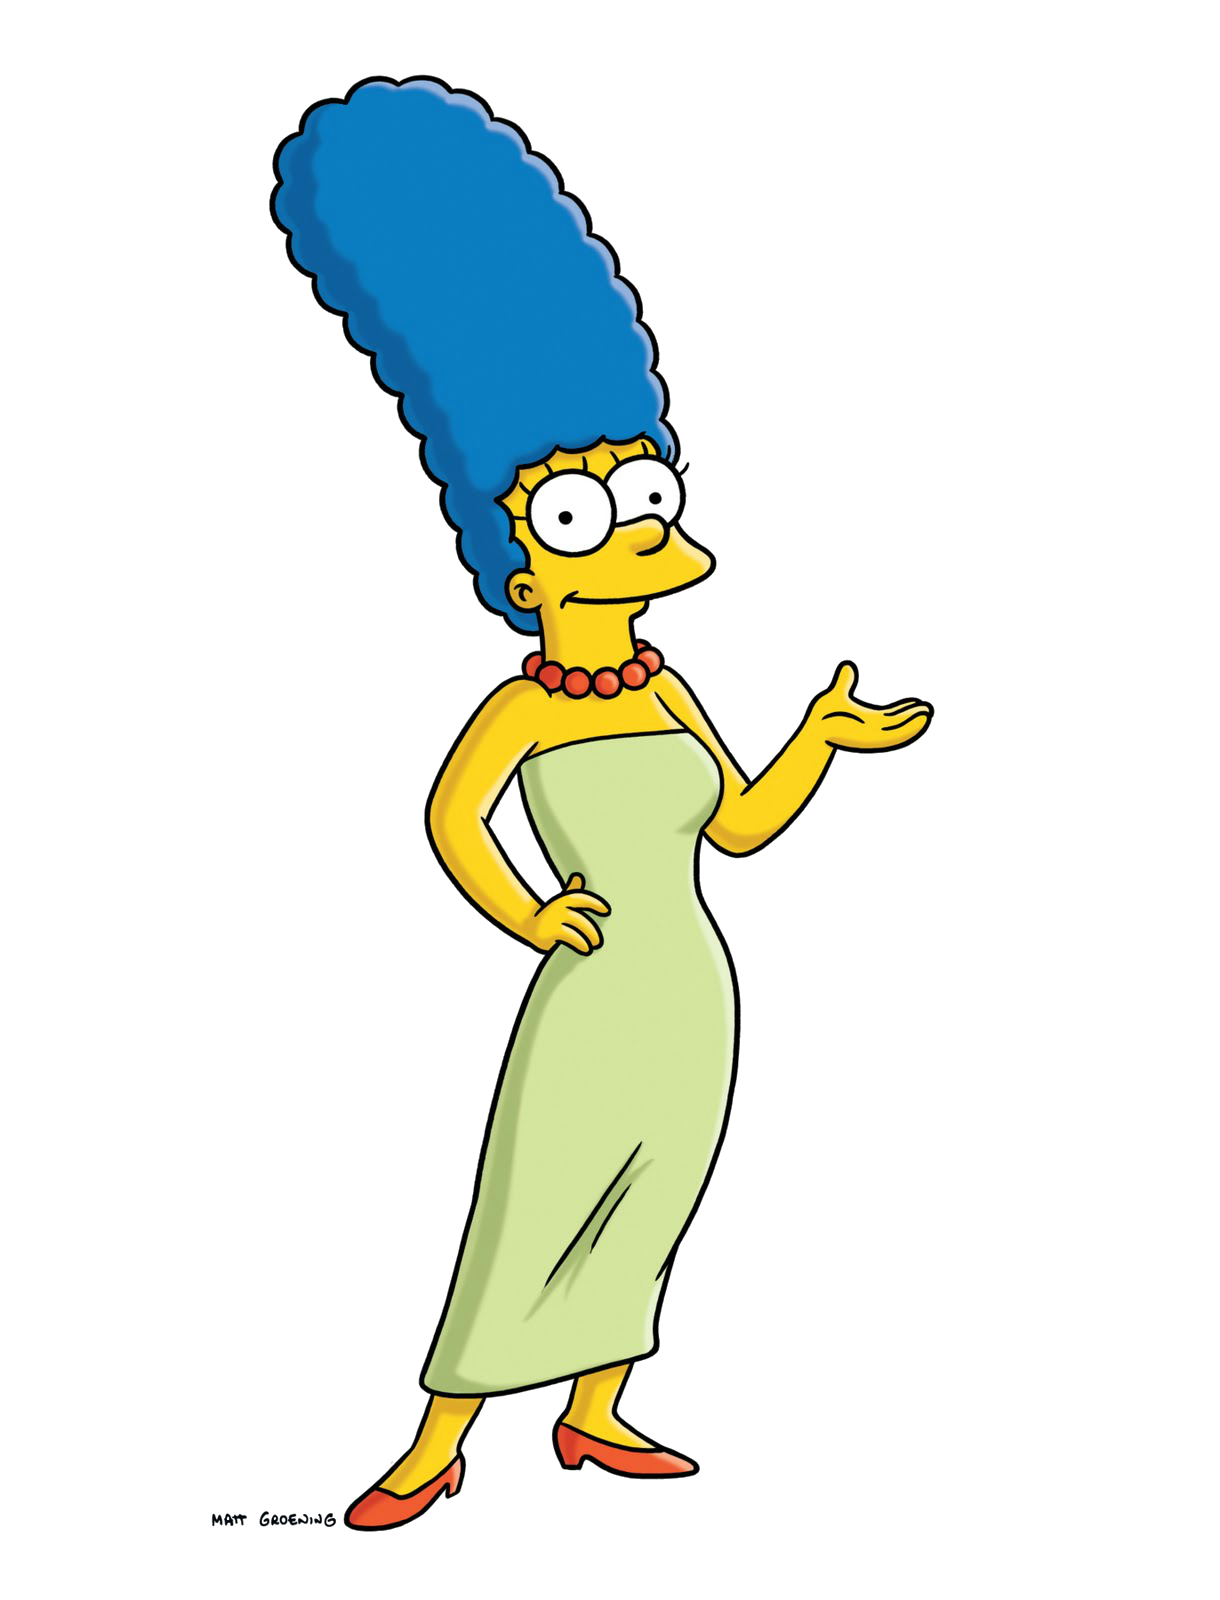 Marge Simpson. u201c